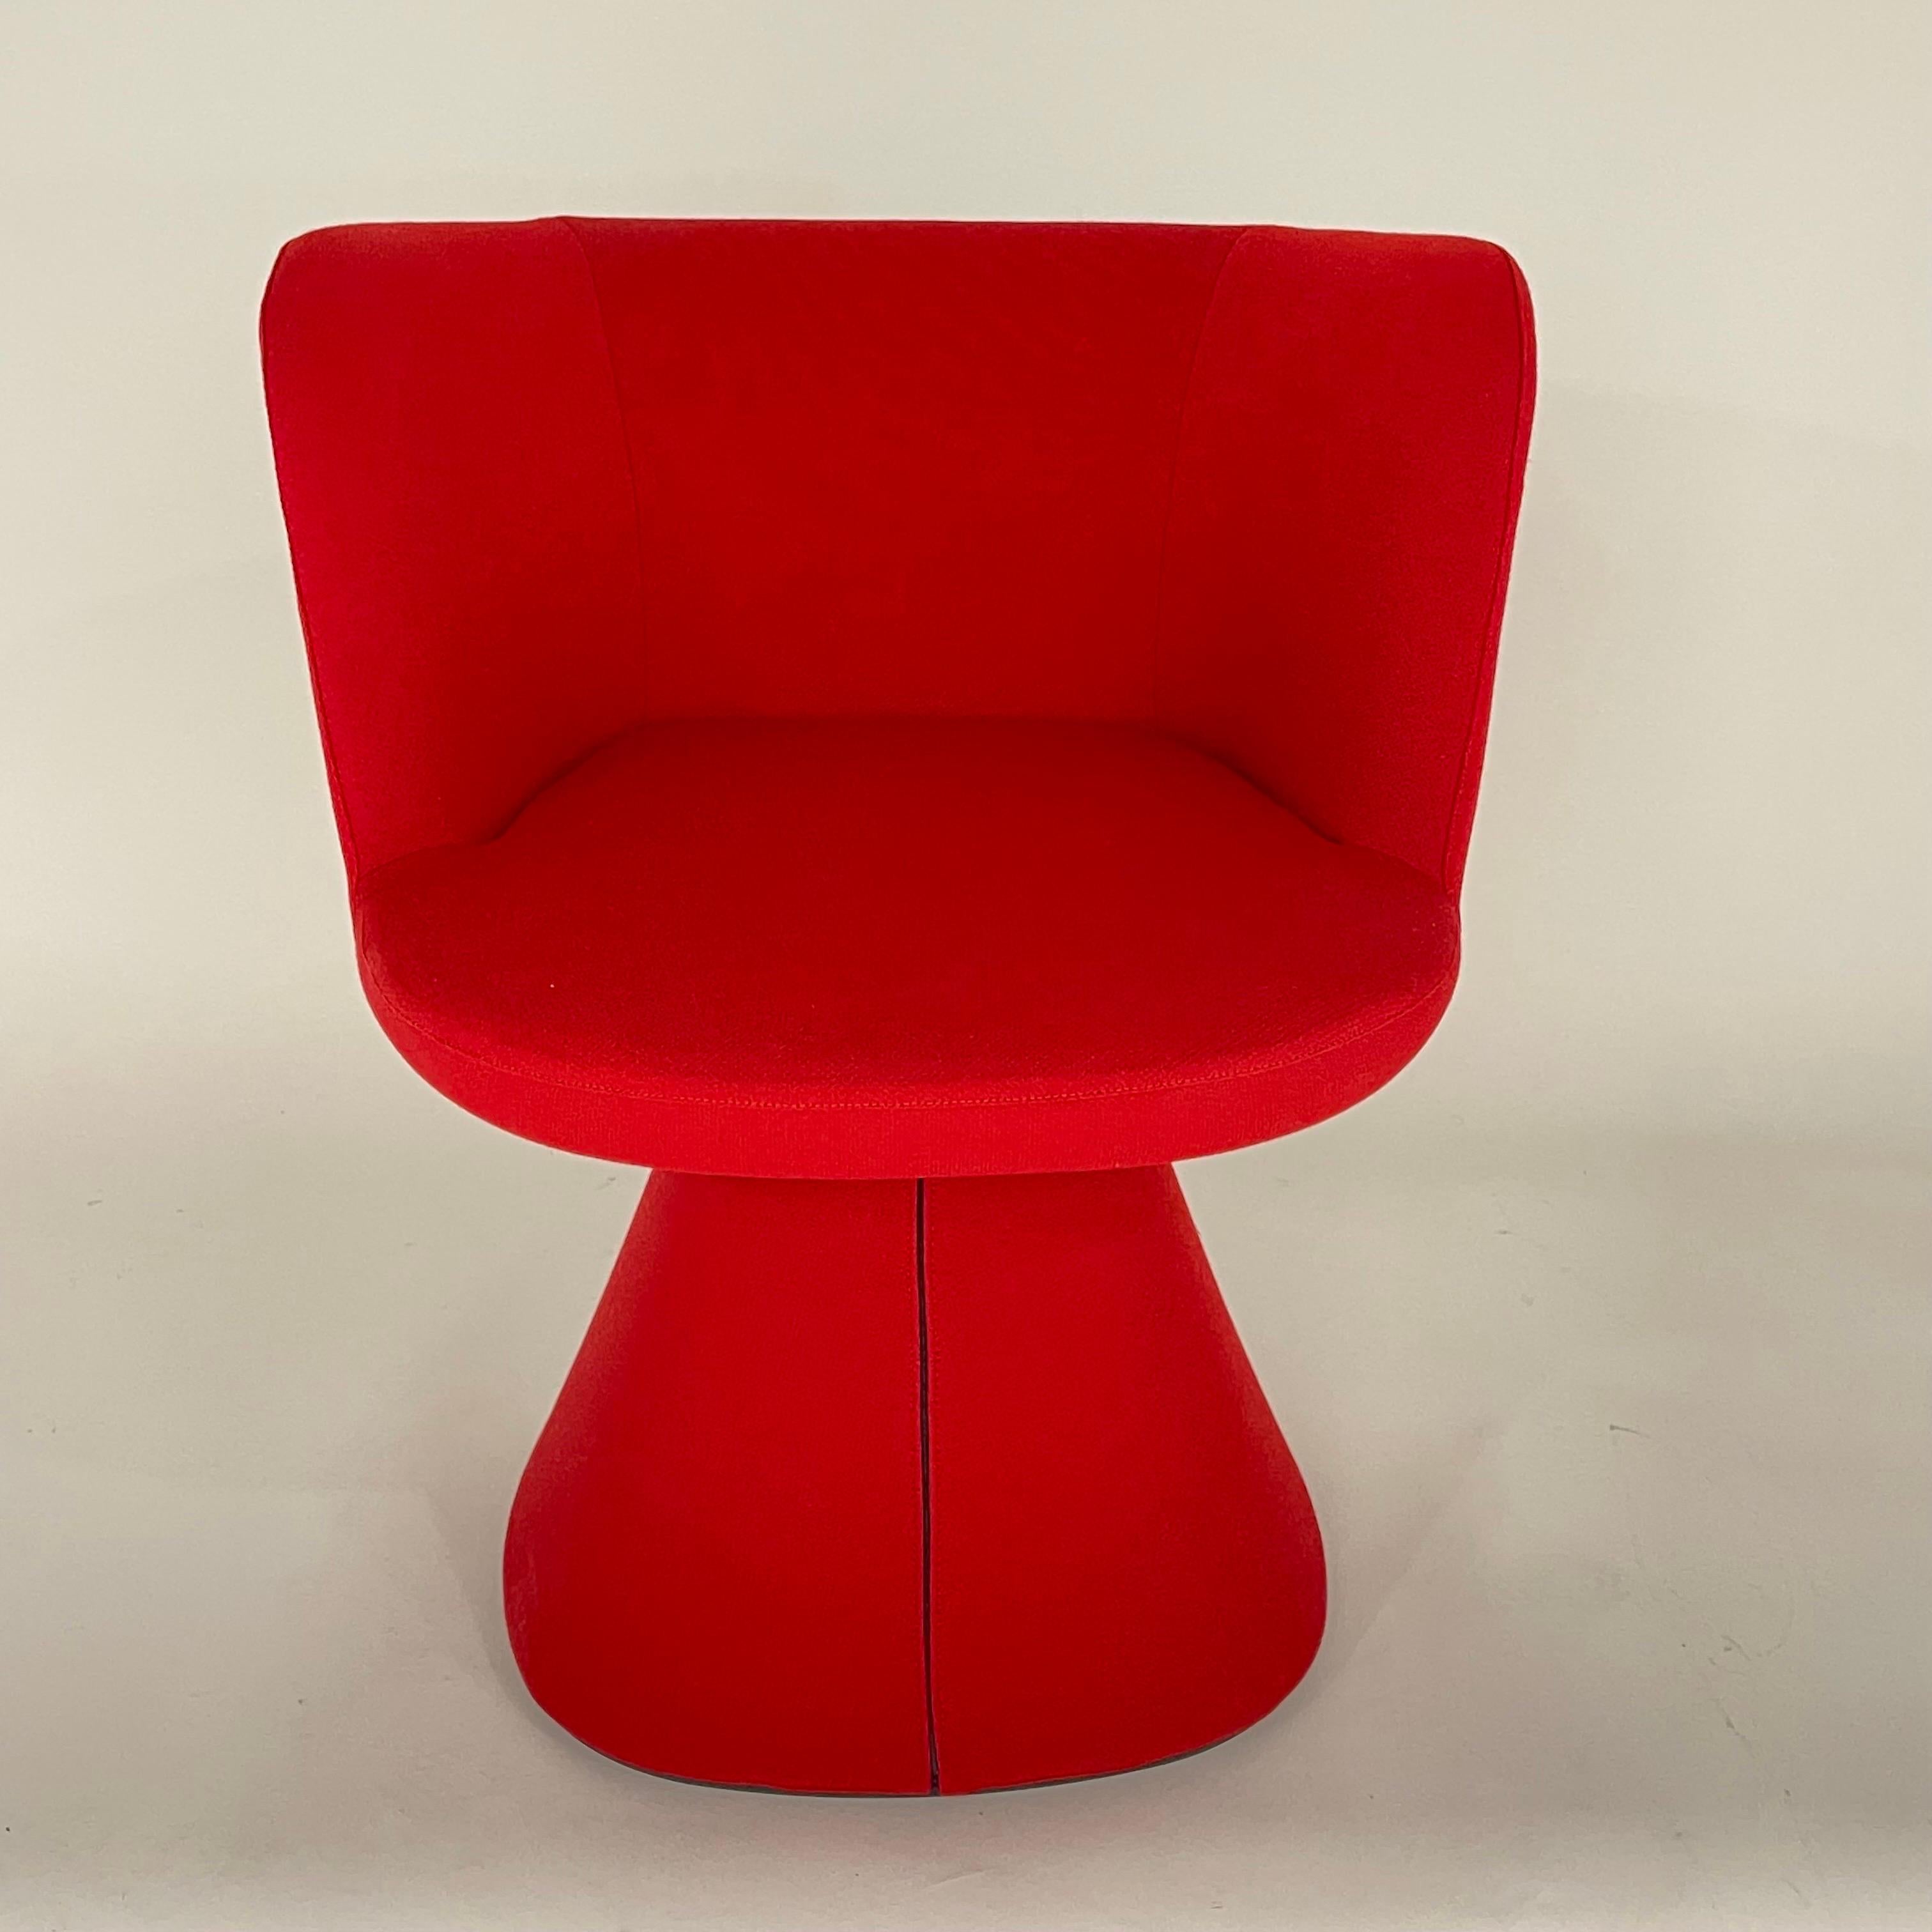 Ensemble moderne de quatre chaises de salle à manger pivotantes Flair O' en tissu rouge luxueux avec mécanisme de retour automatique, parfaites pour les chaises de salle à manger, les chaises de jeu ou les chaises d'appoint.  Conçu par Monica Armani